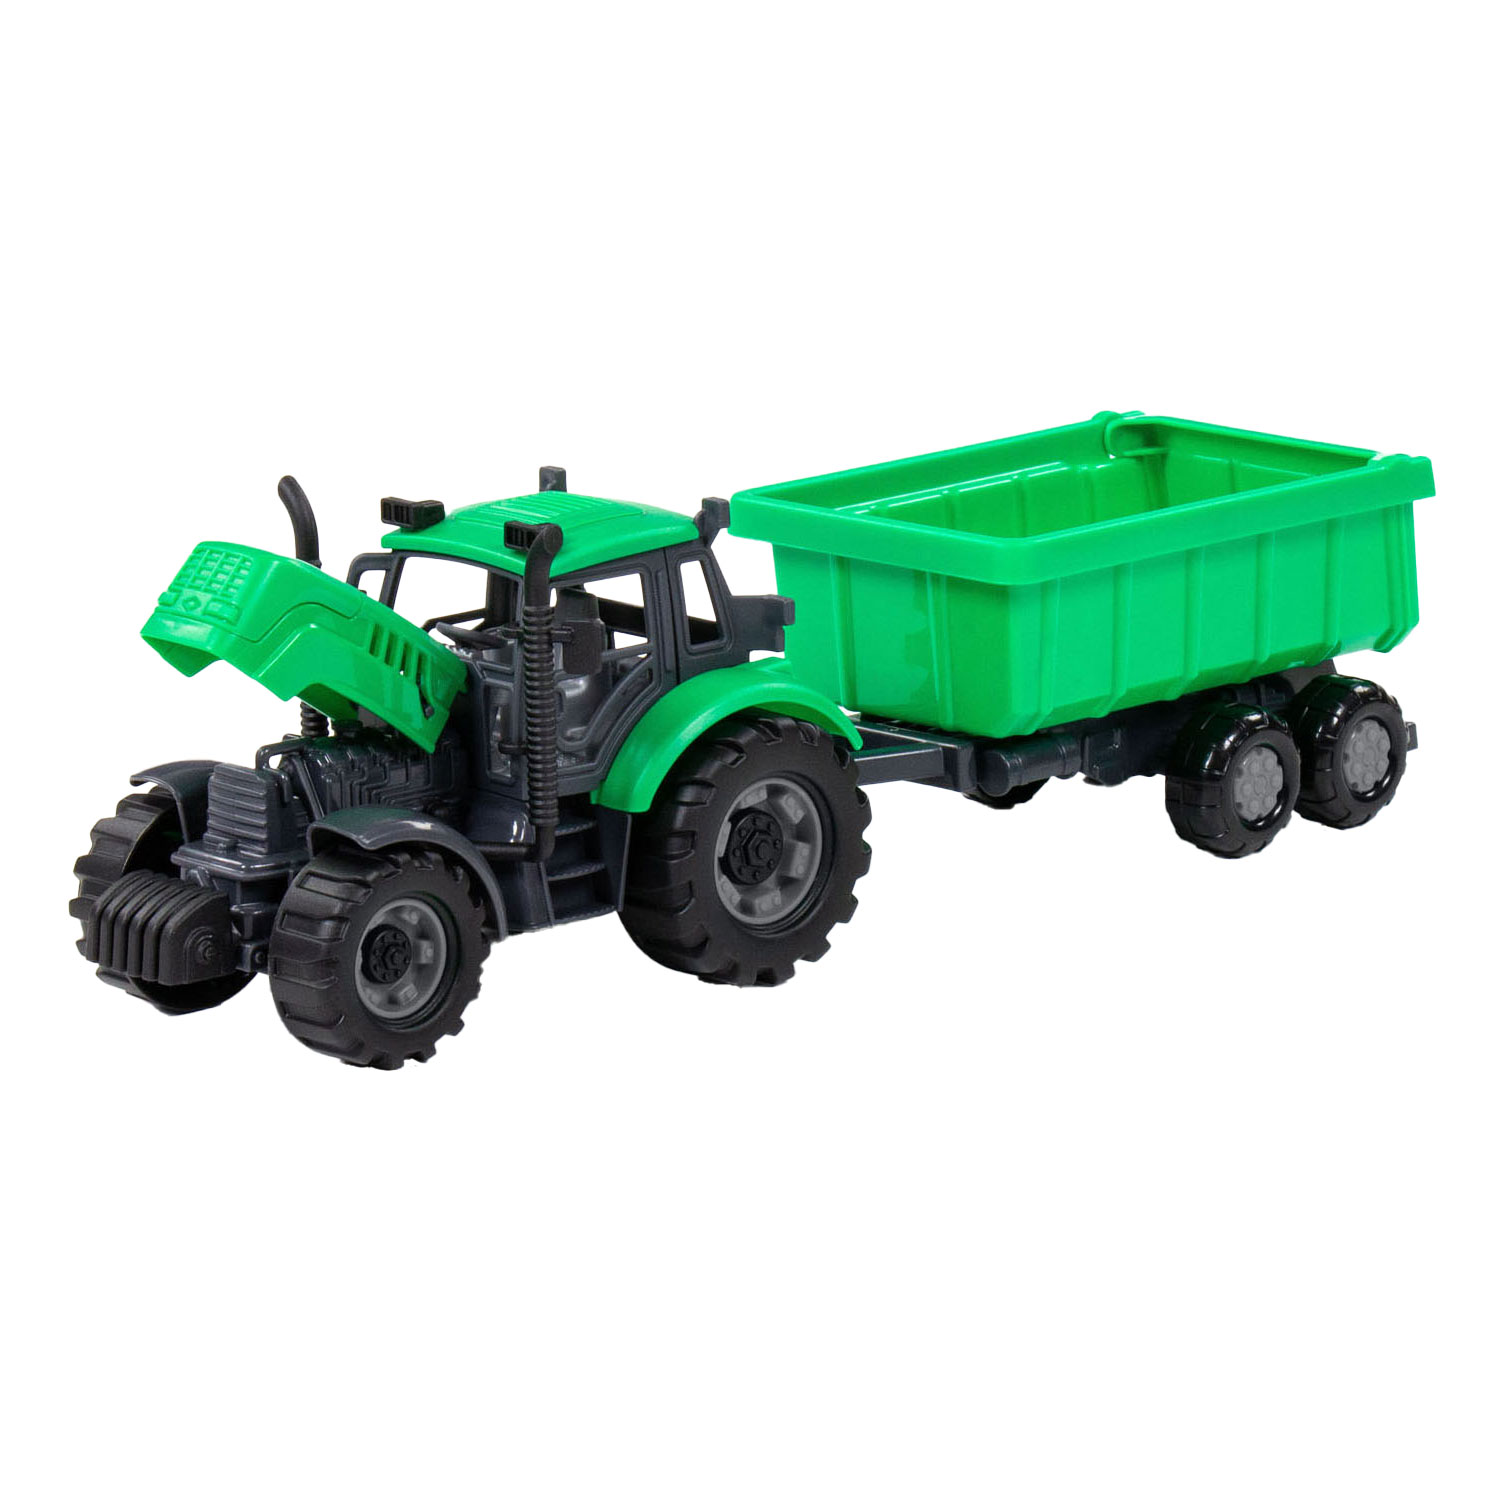 Tracteur Cavallino avec remorque benne vert, échelle 1:32